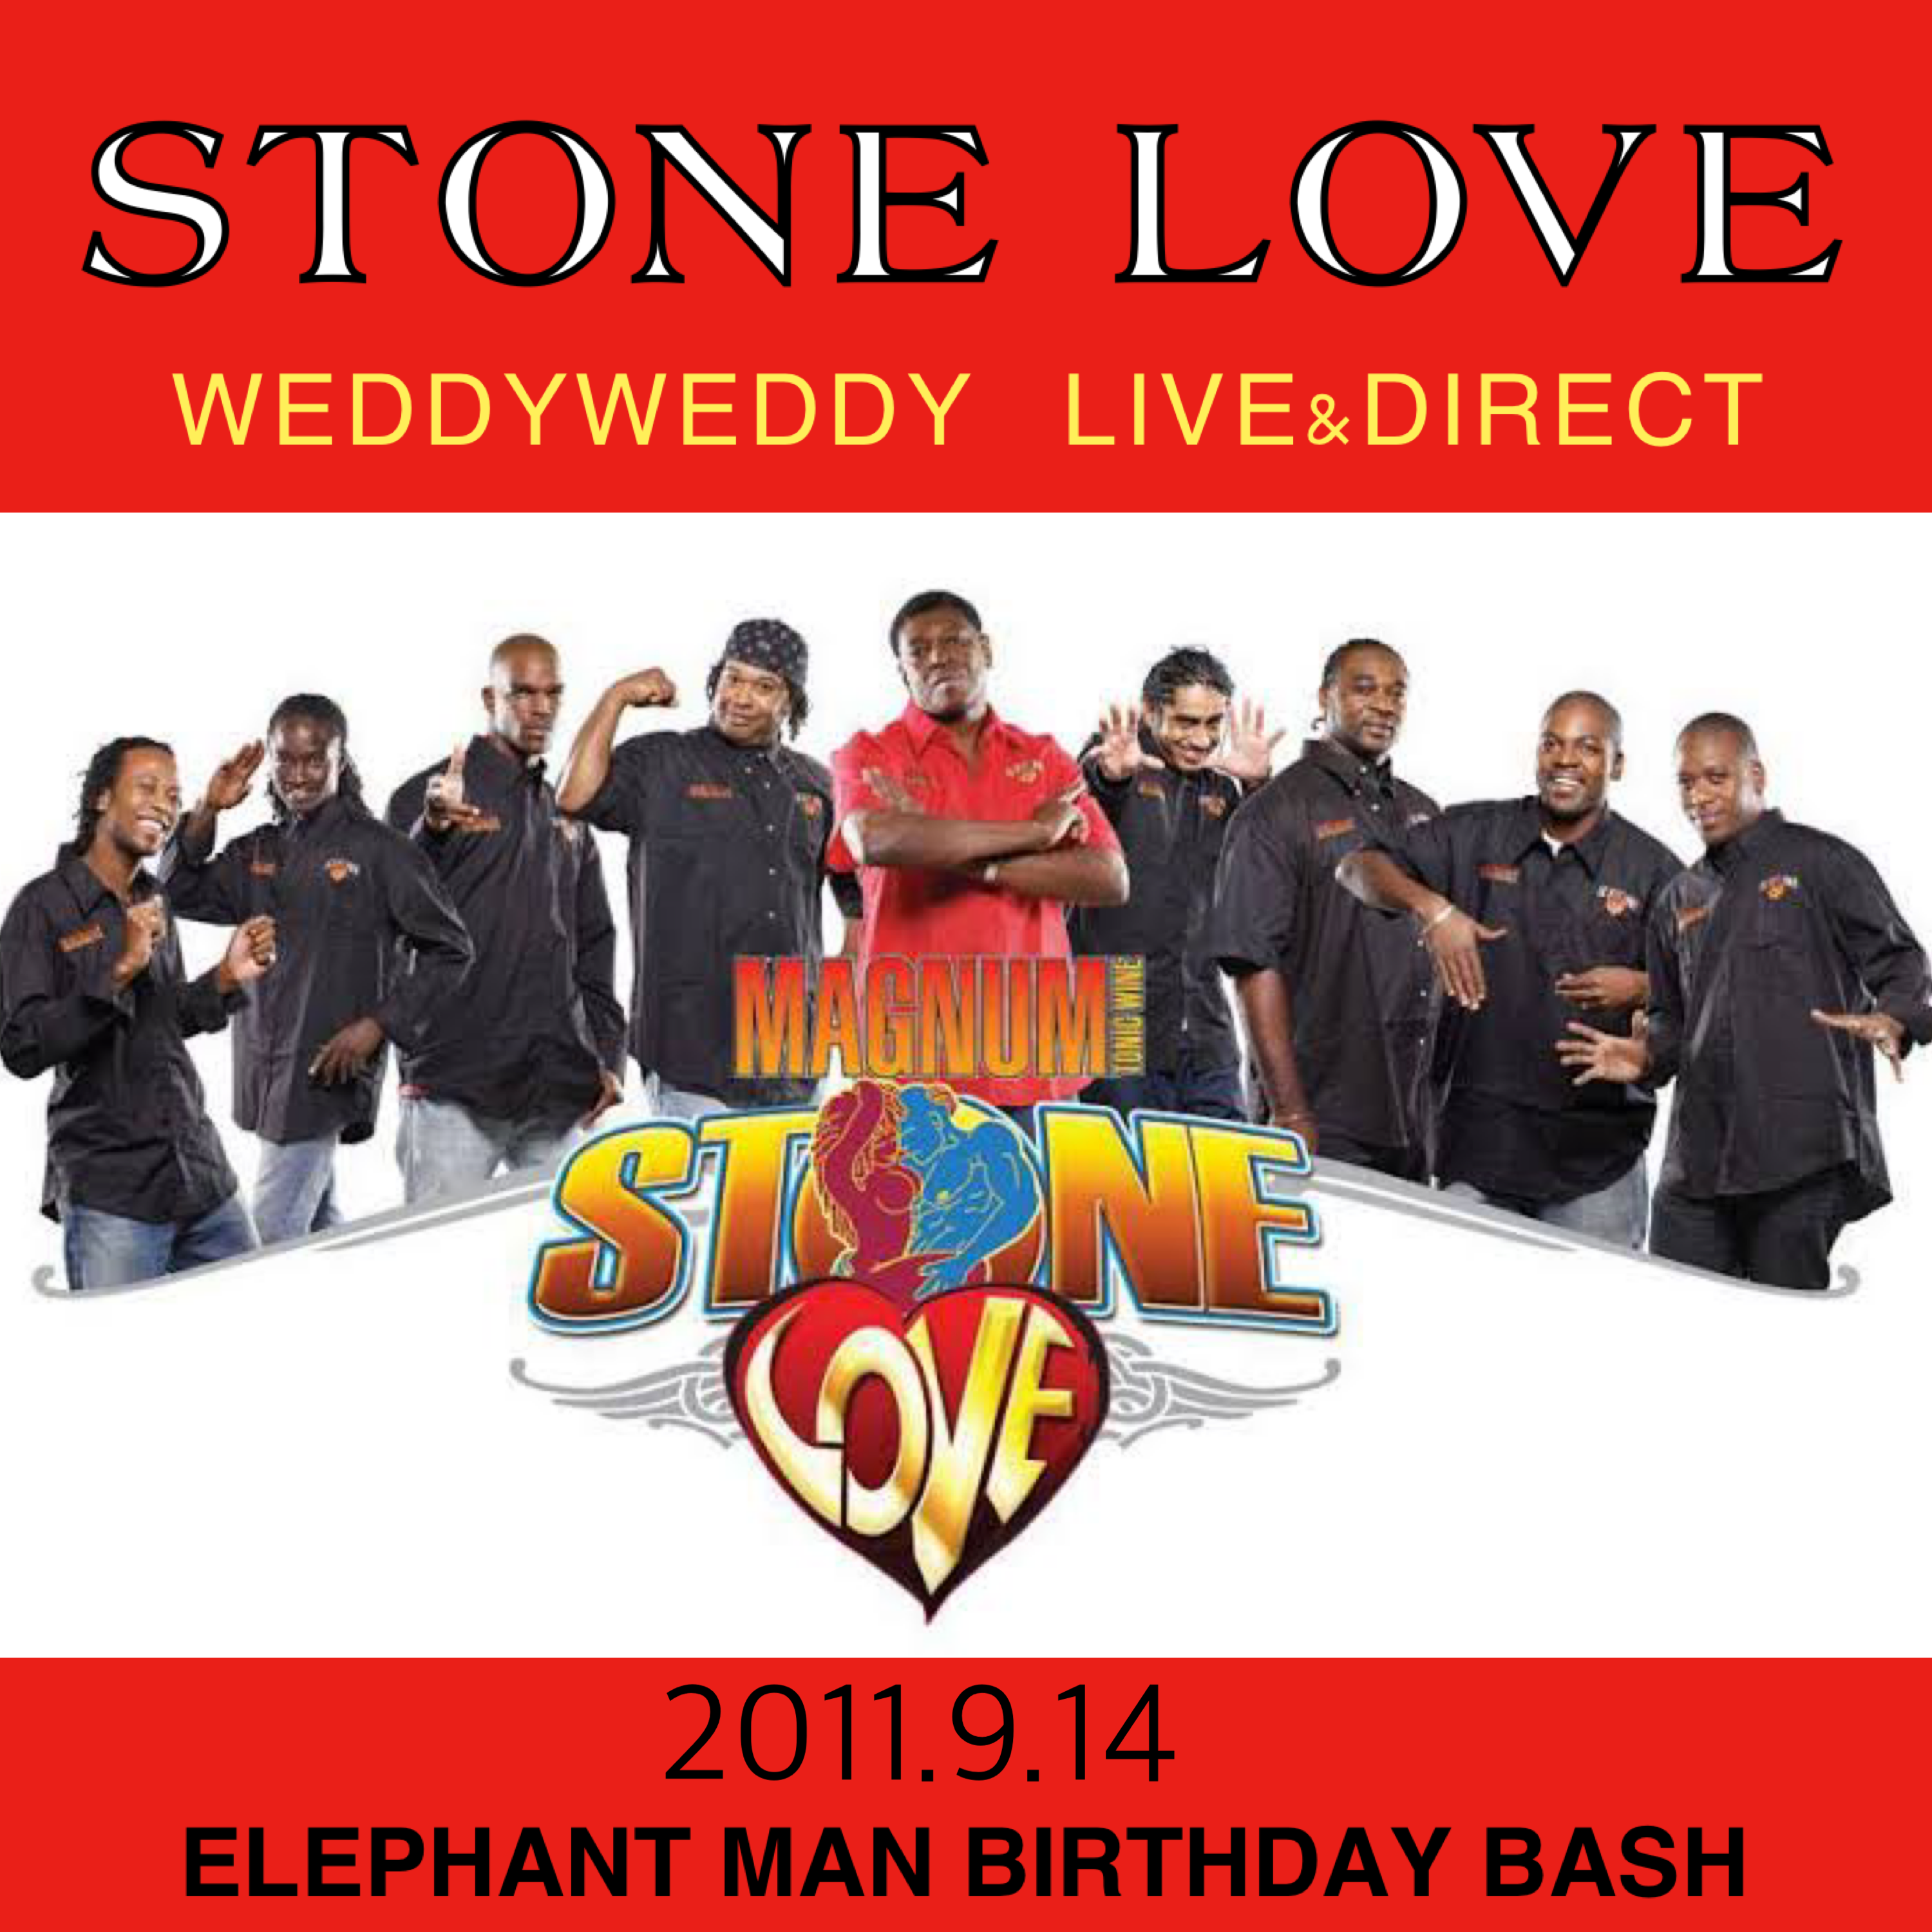 Stone Love Weddyweddy Live Direct 11 9 14 噂のレゲエ倉庫